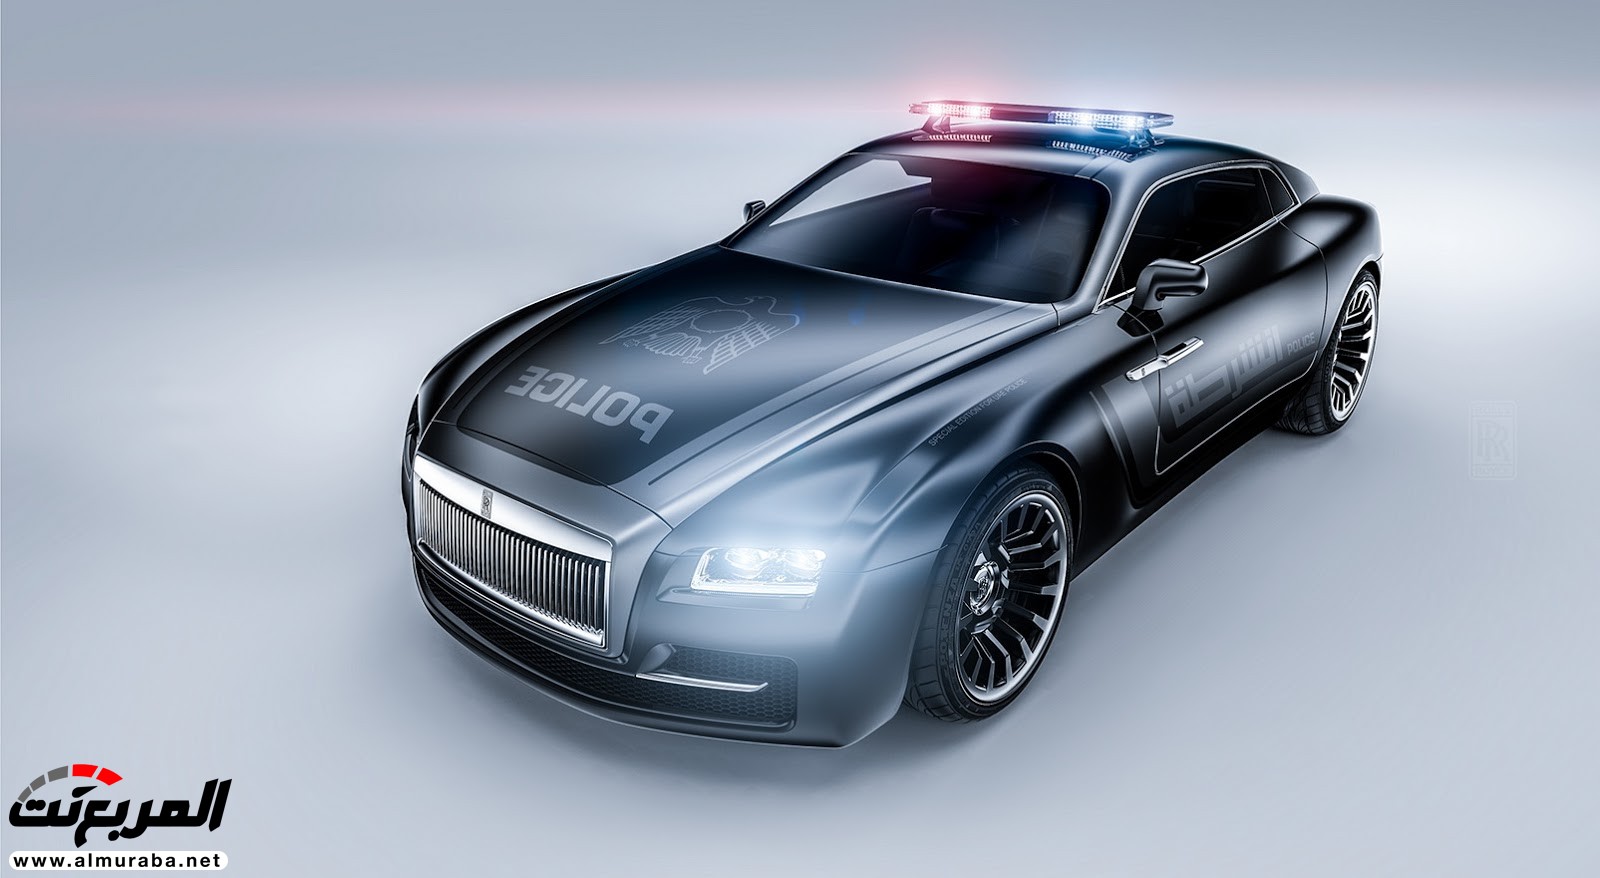 "صور افتراضية" لما يمكن أن تبدو عليه "رولز رويس" رايث كوبيه 2020 Rolls-Royce Wraith Coupe 77